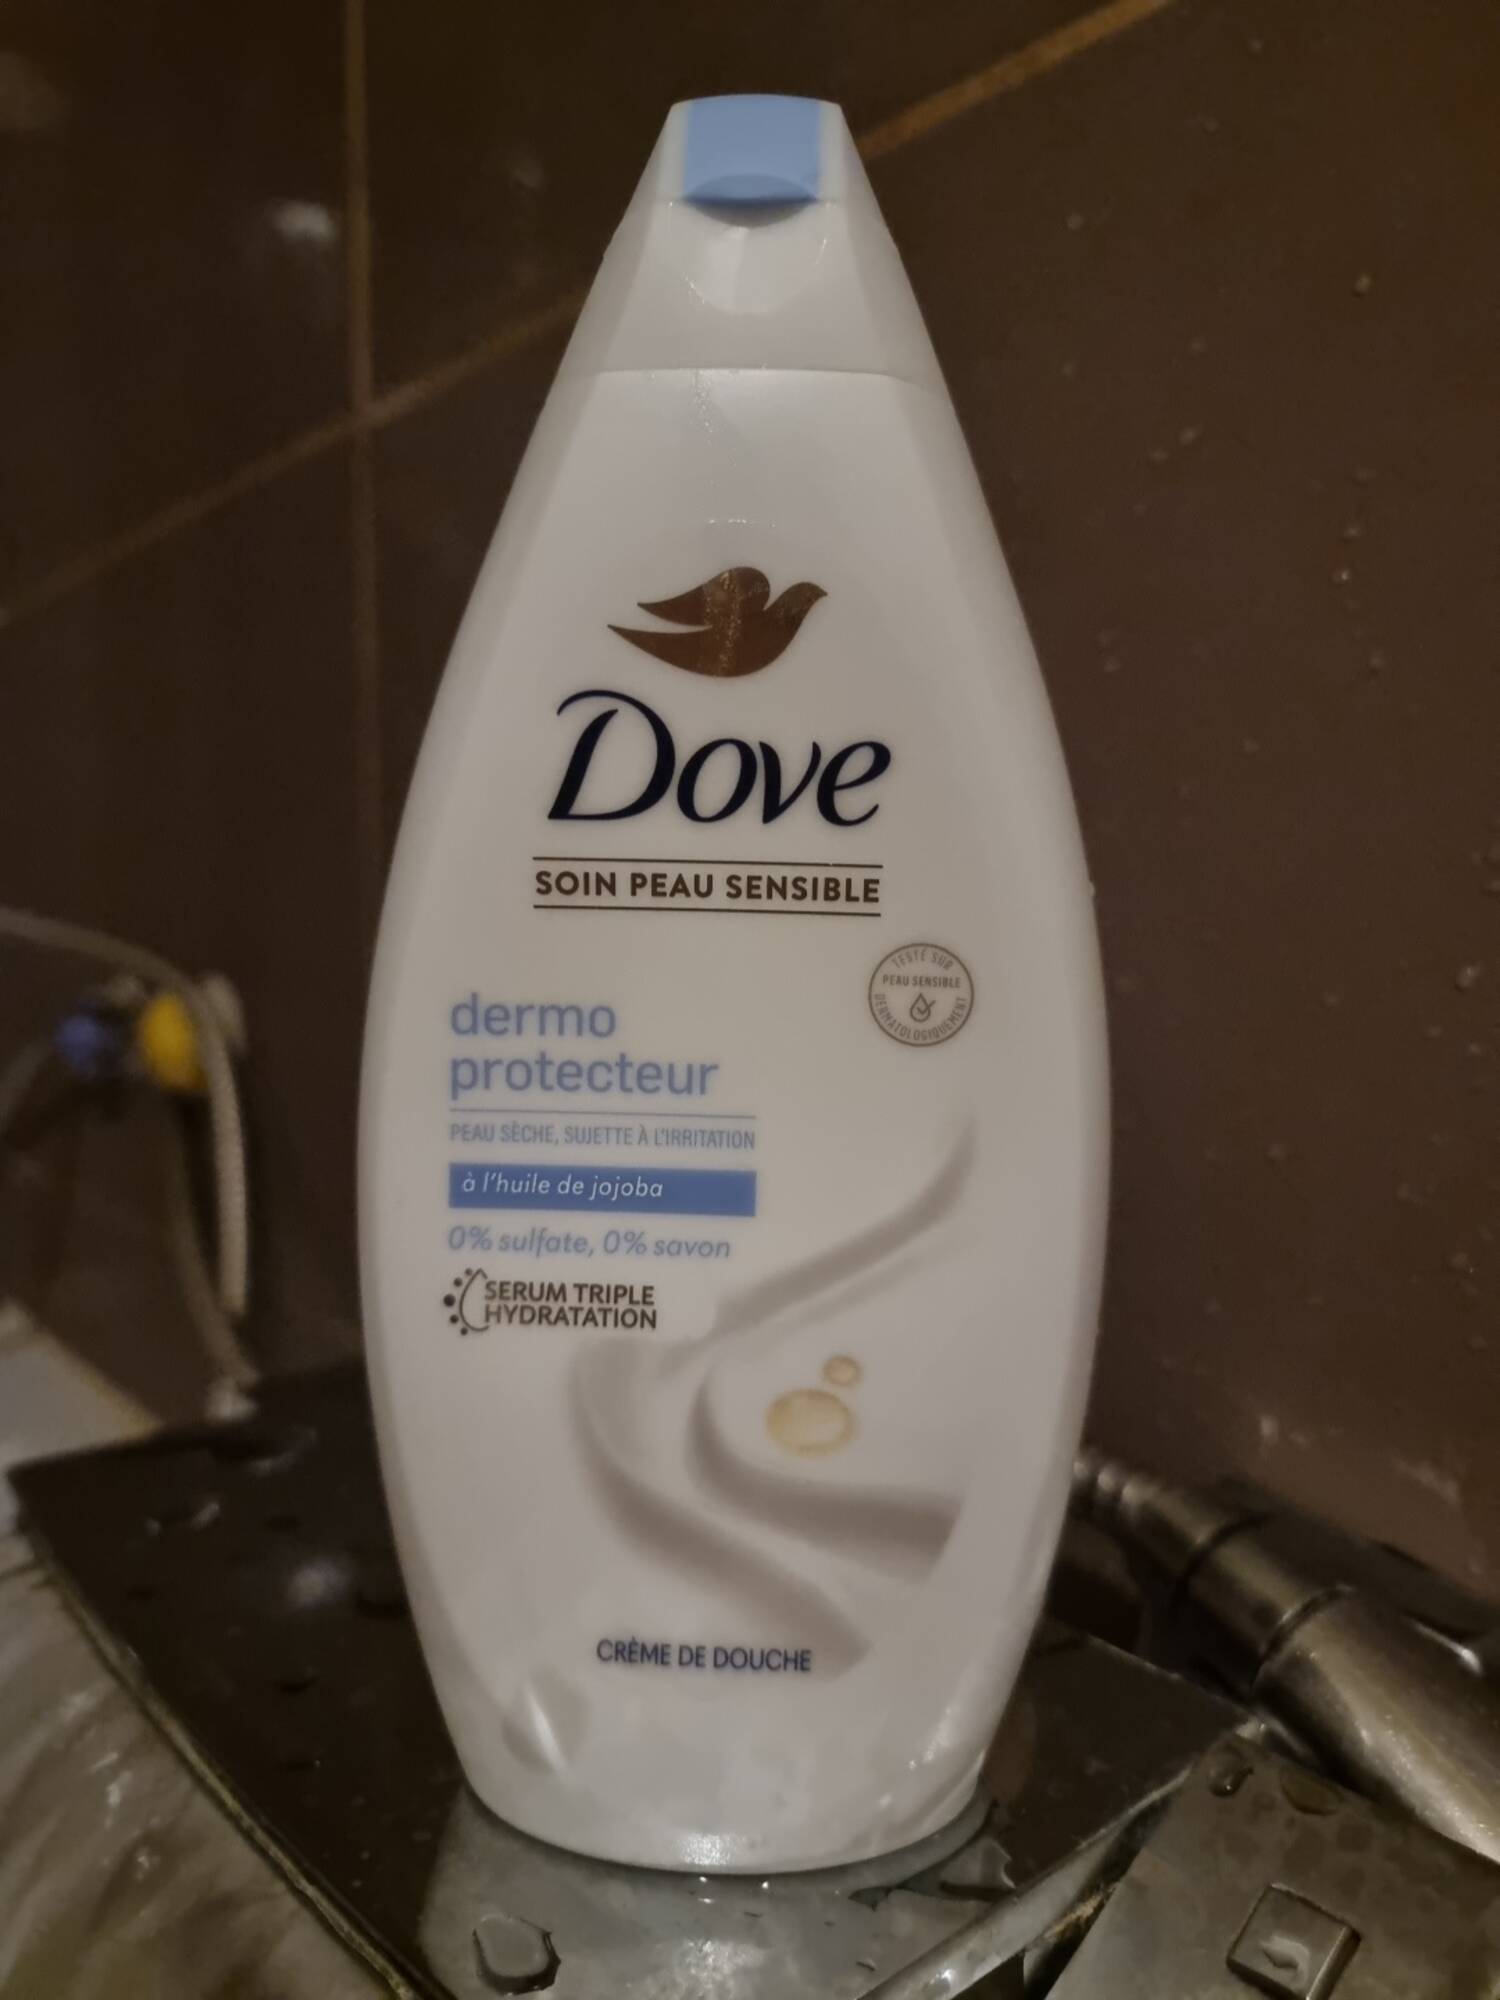 DOVE - Dermo protecteur - Crème de douche